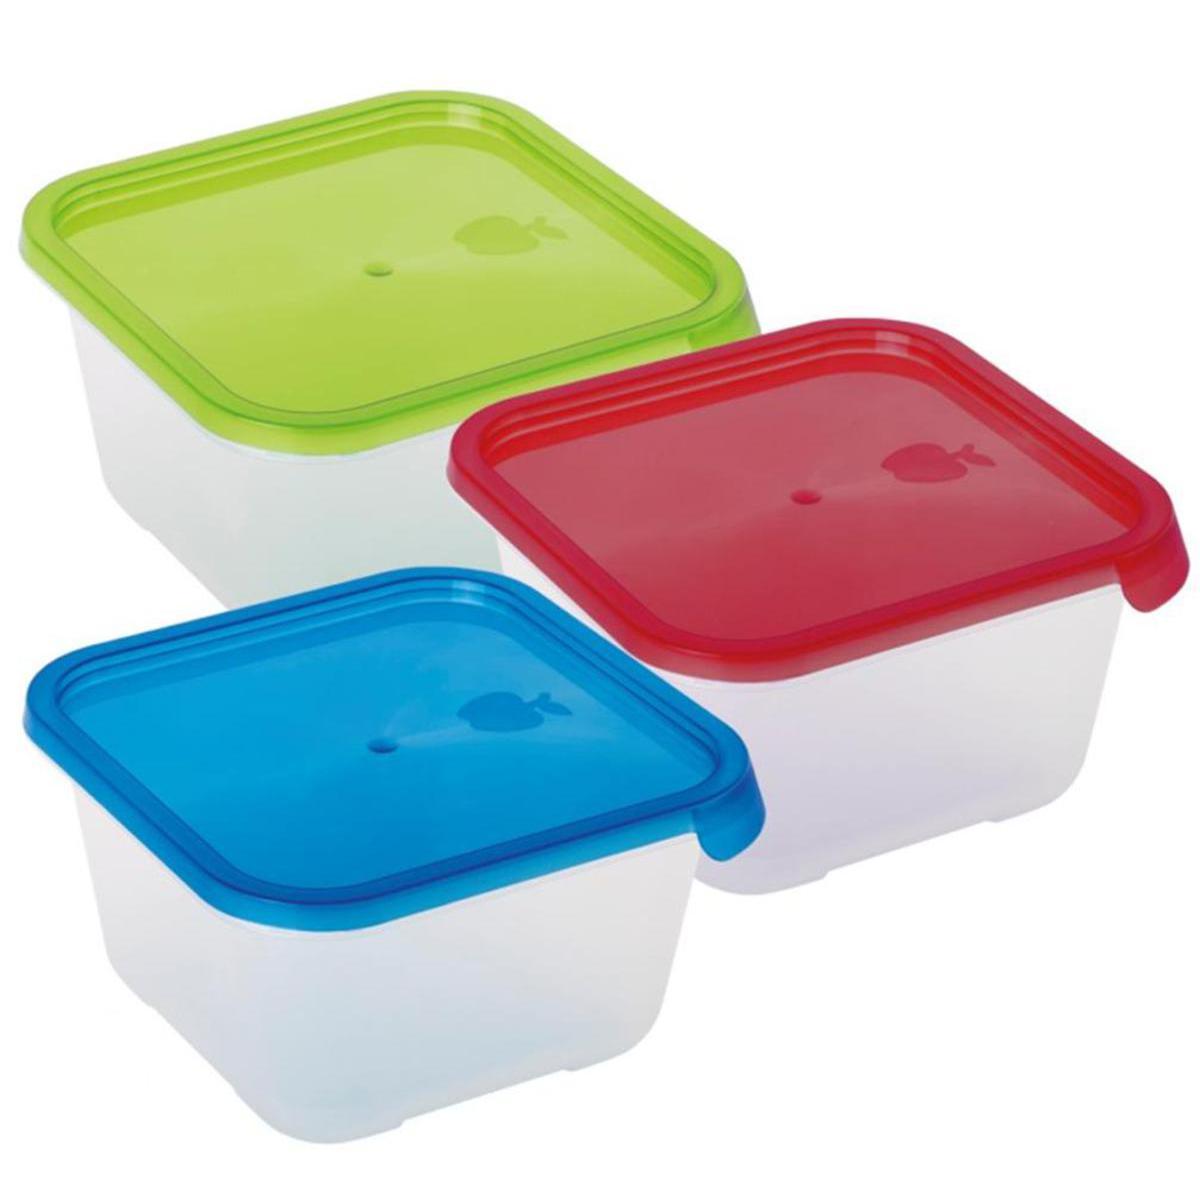 Boite alimentaire carrée - Plastique - 16 x 16 x 9 cm - Vert, bleu, rouge